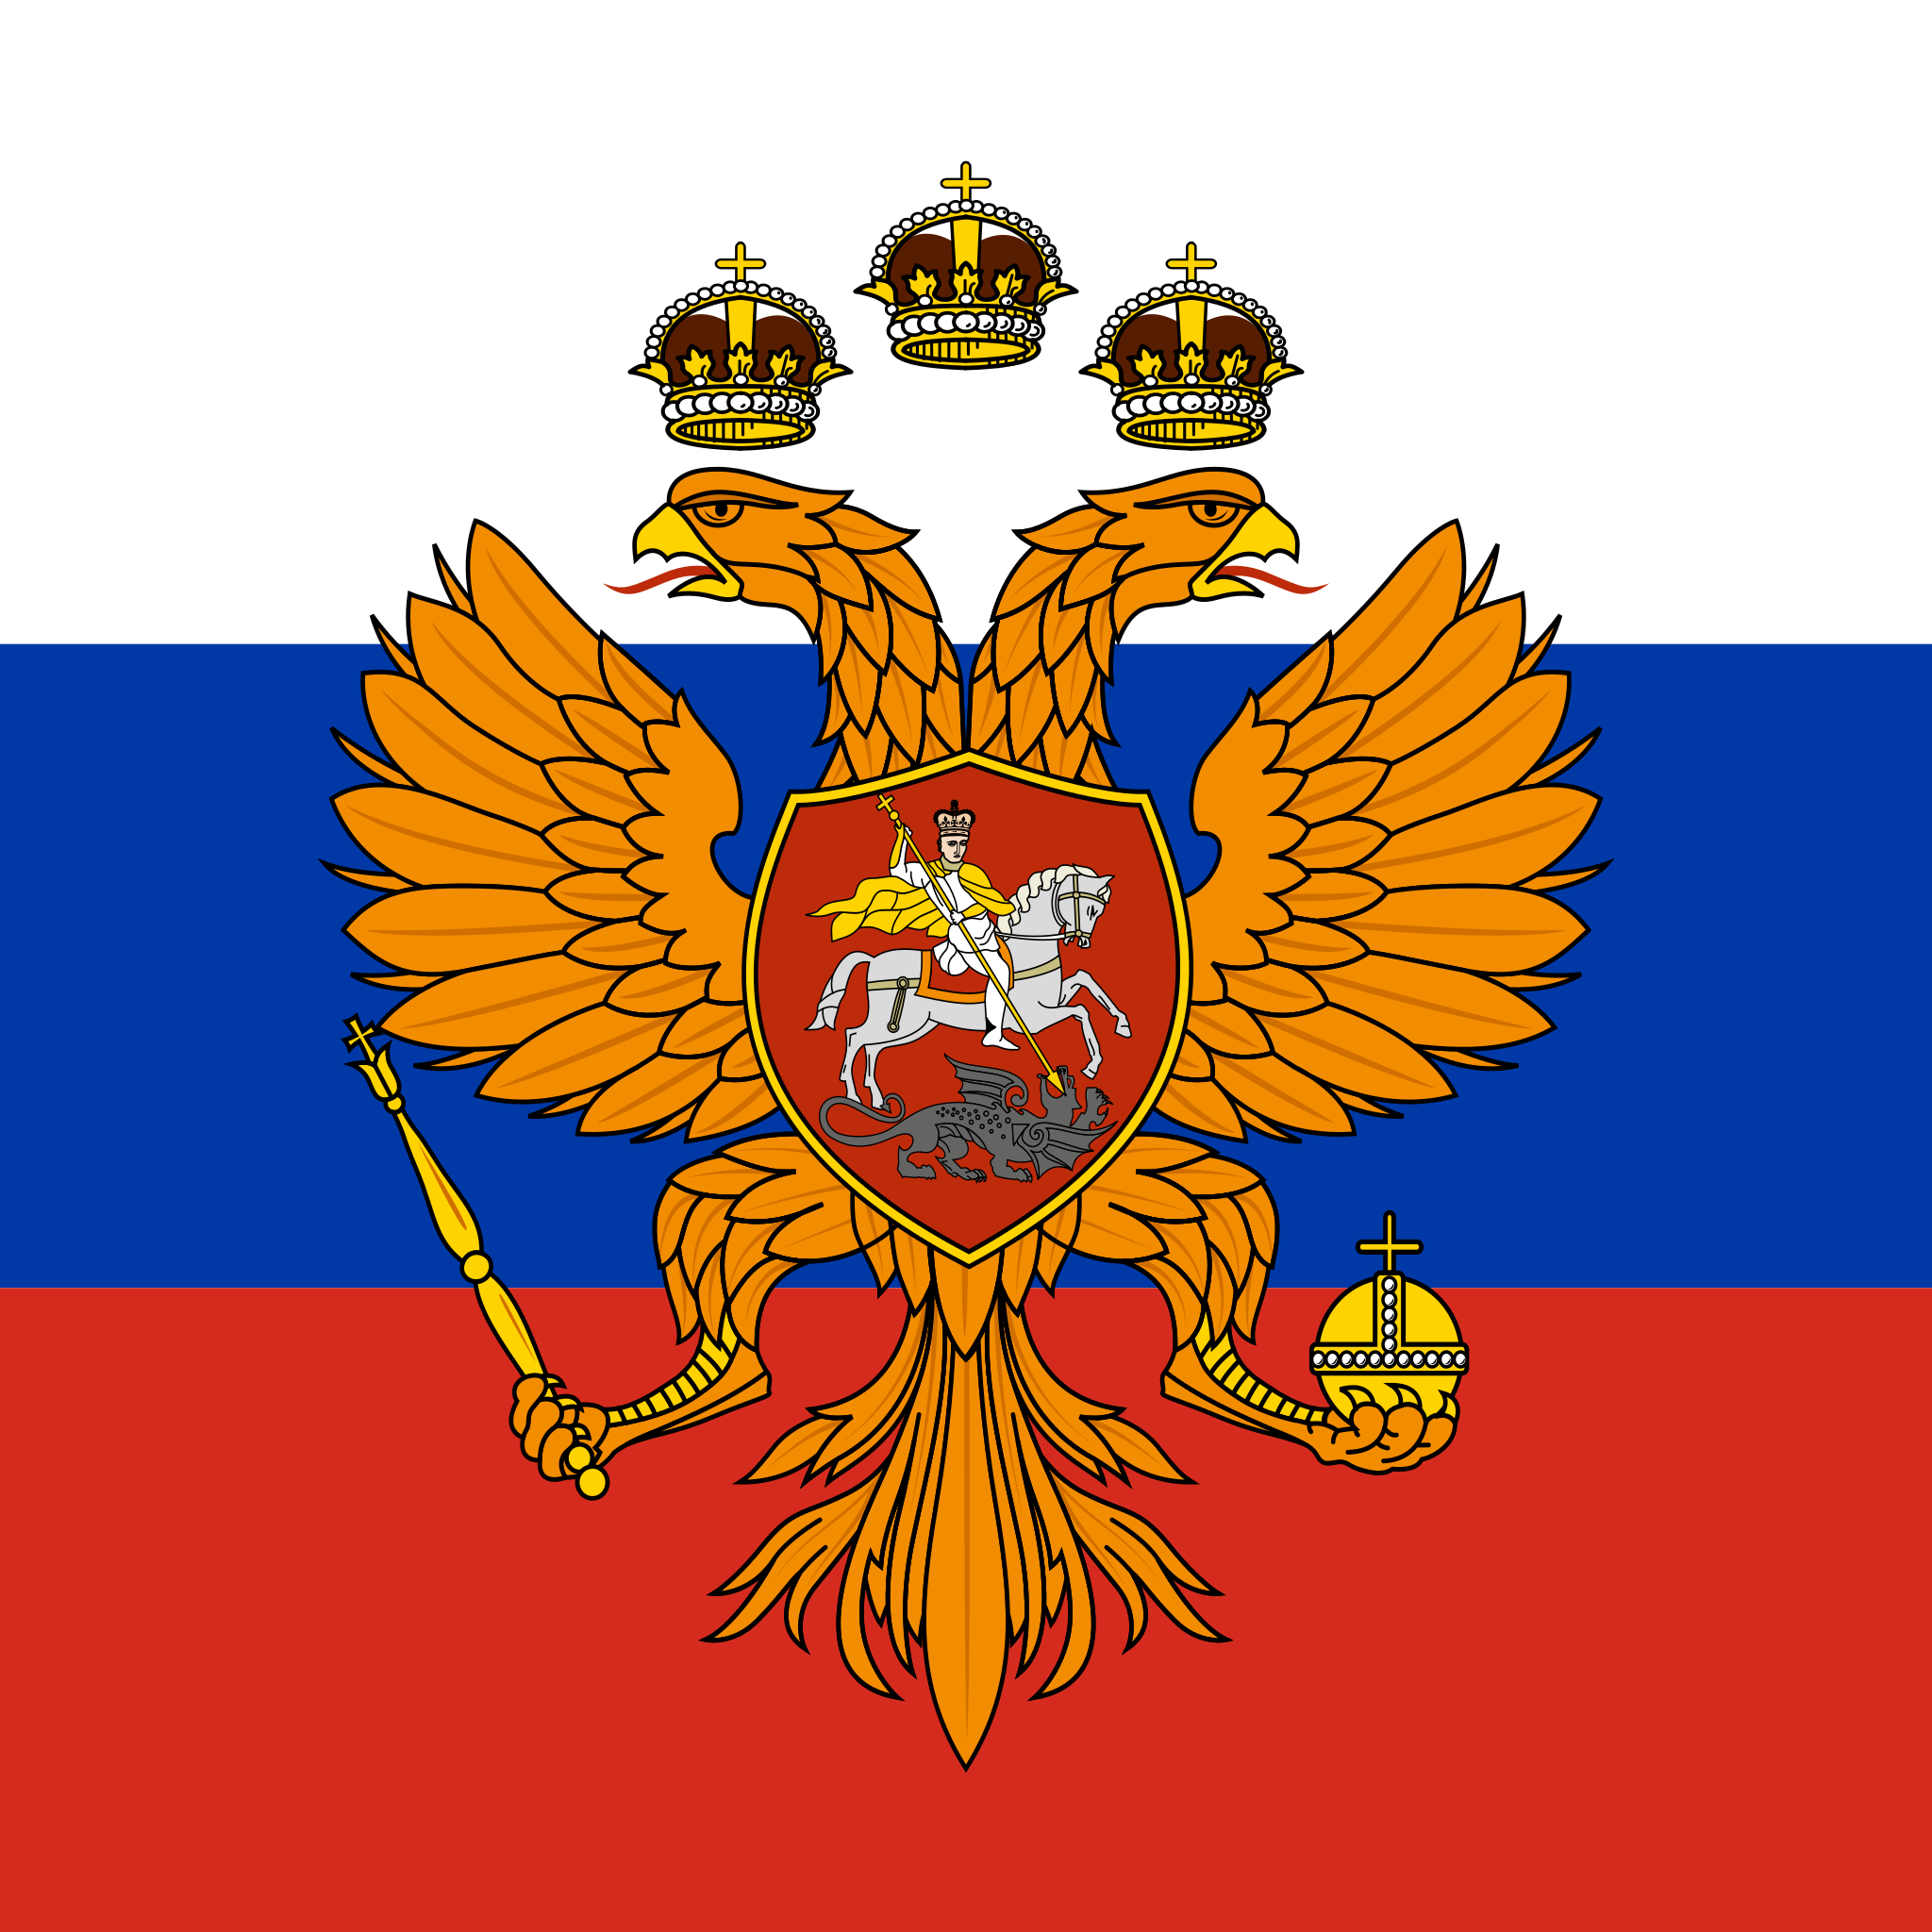 俄罗斯国旗符号复制图片